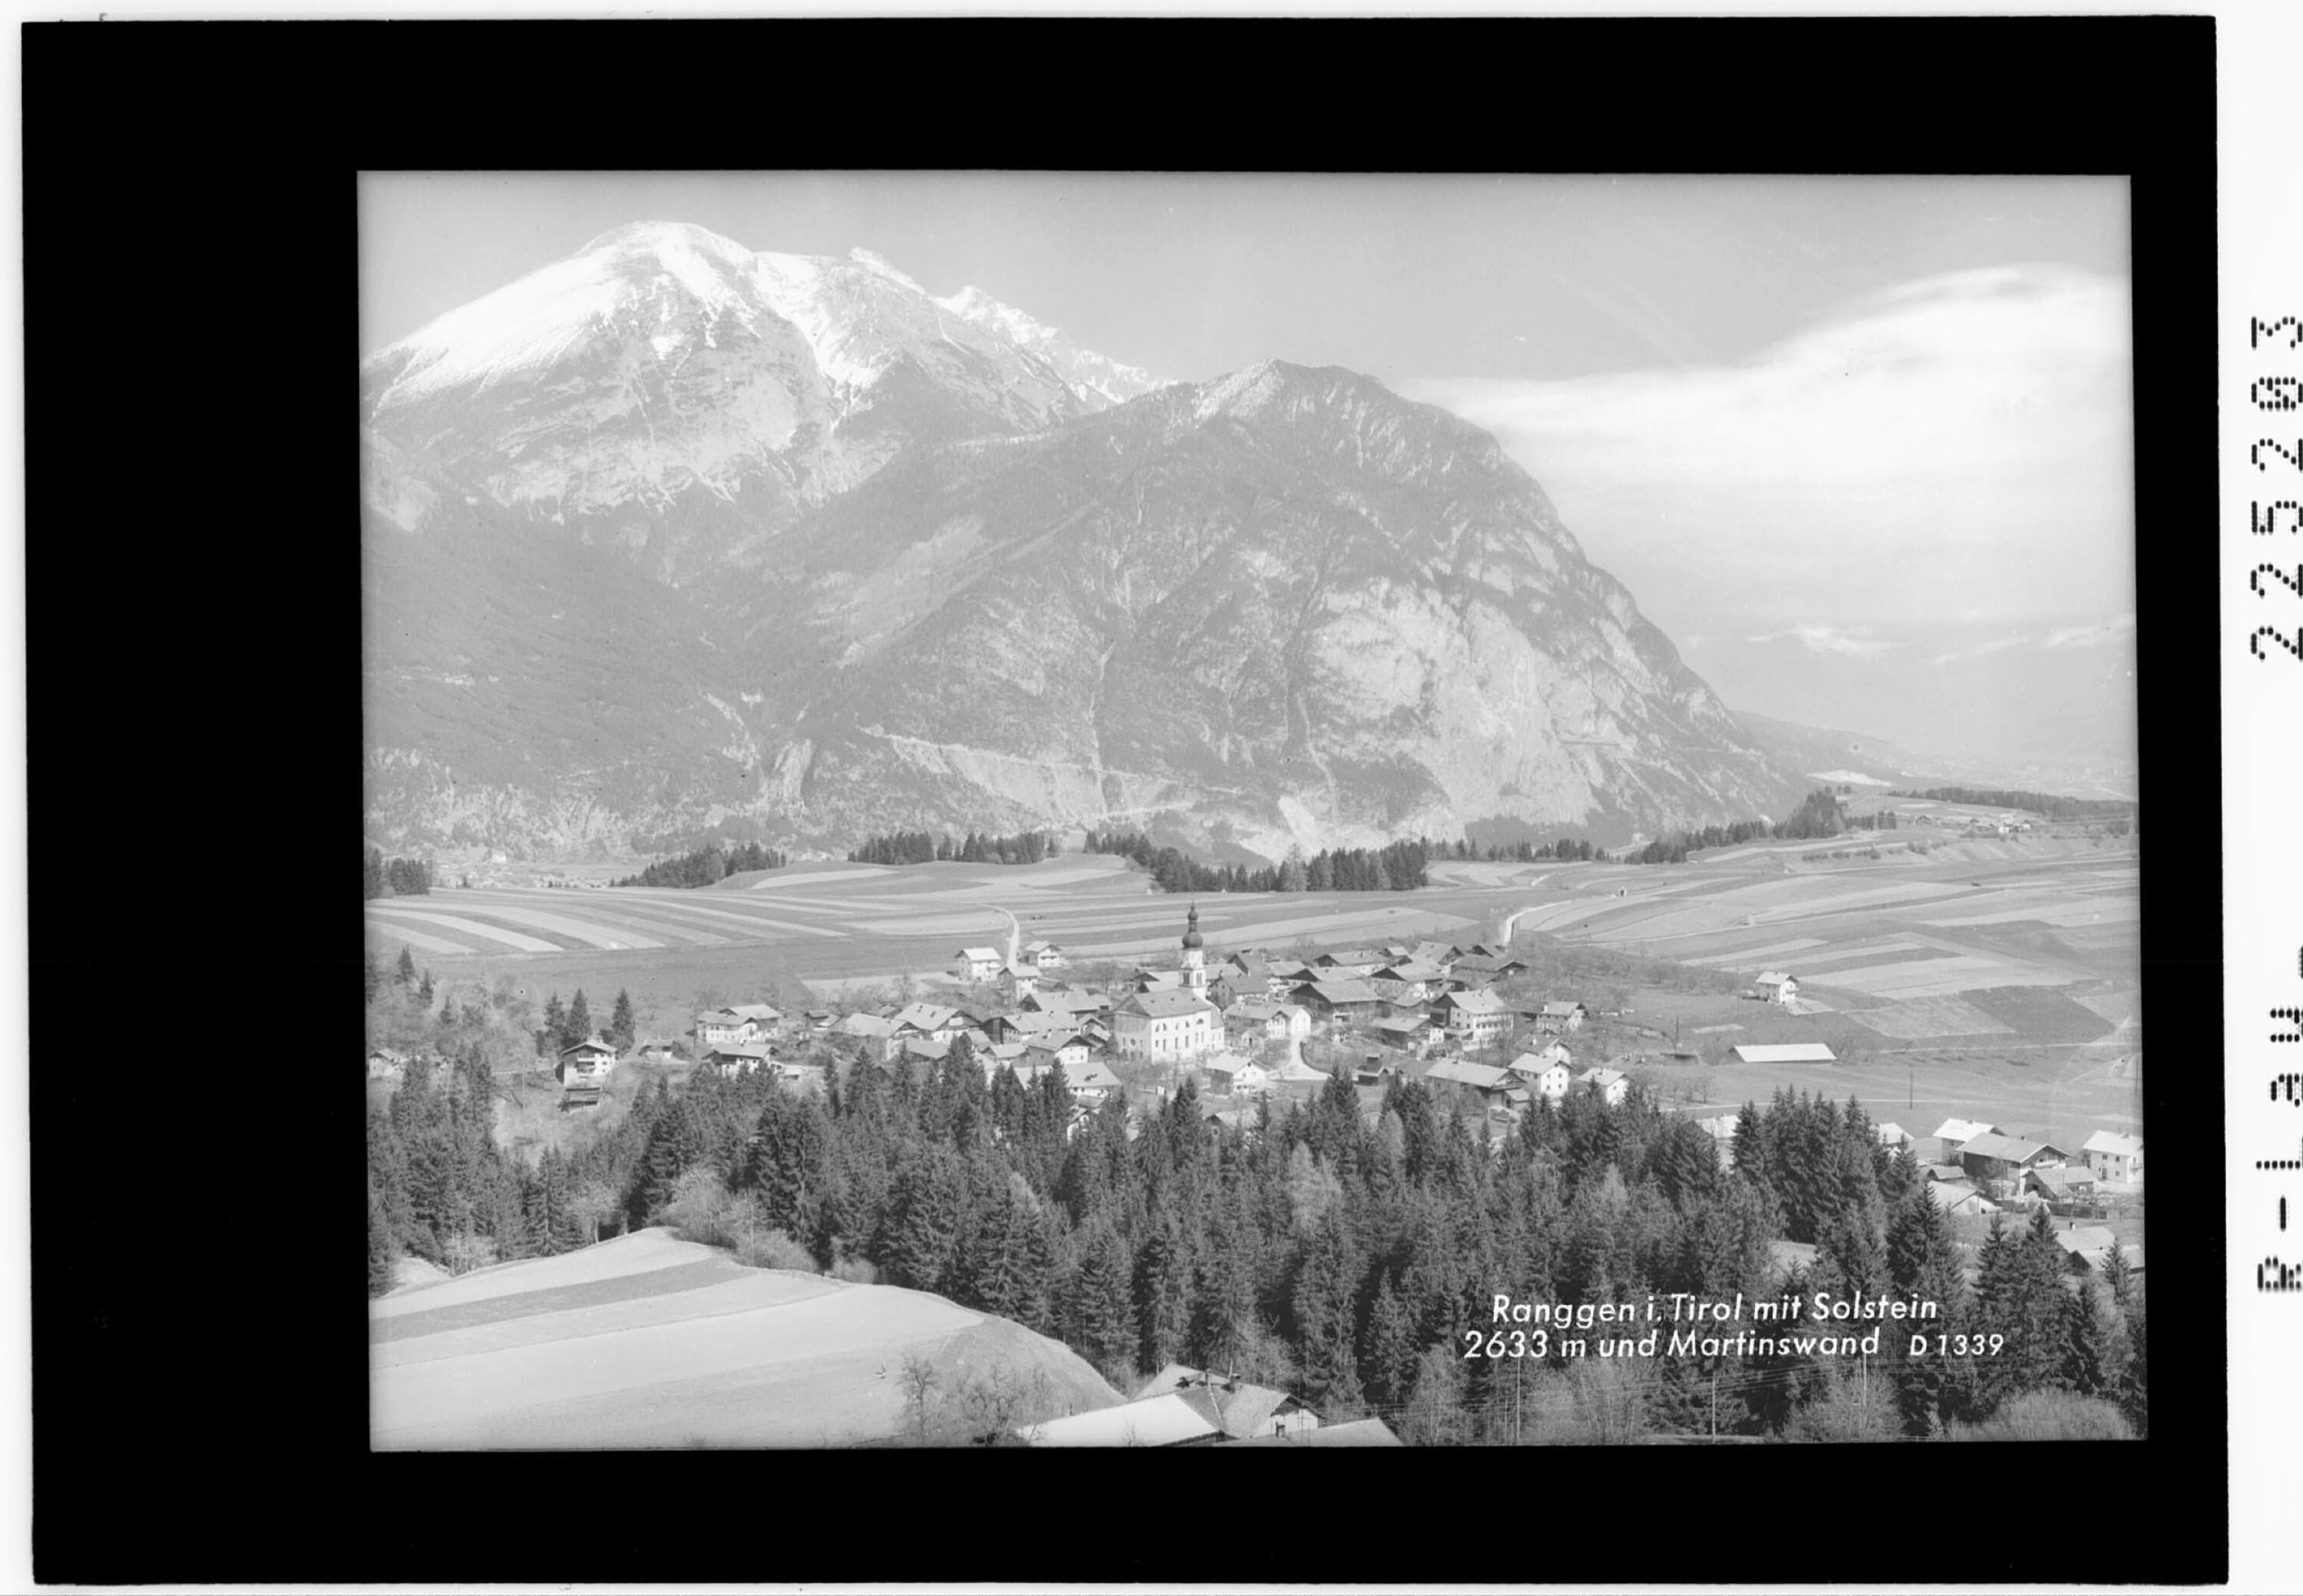 Ranggen in Tirol mit Solstein 2633 m und Martinswand></div>


    <hr>
    <div class=